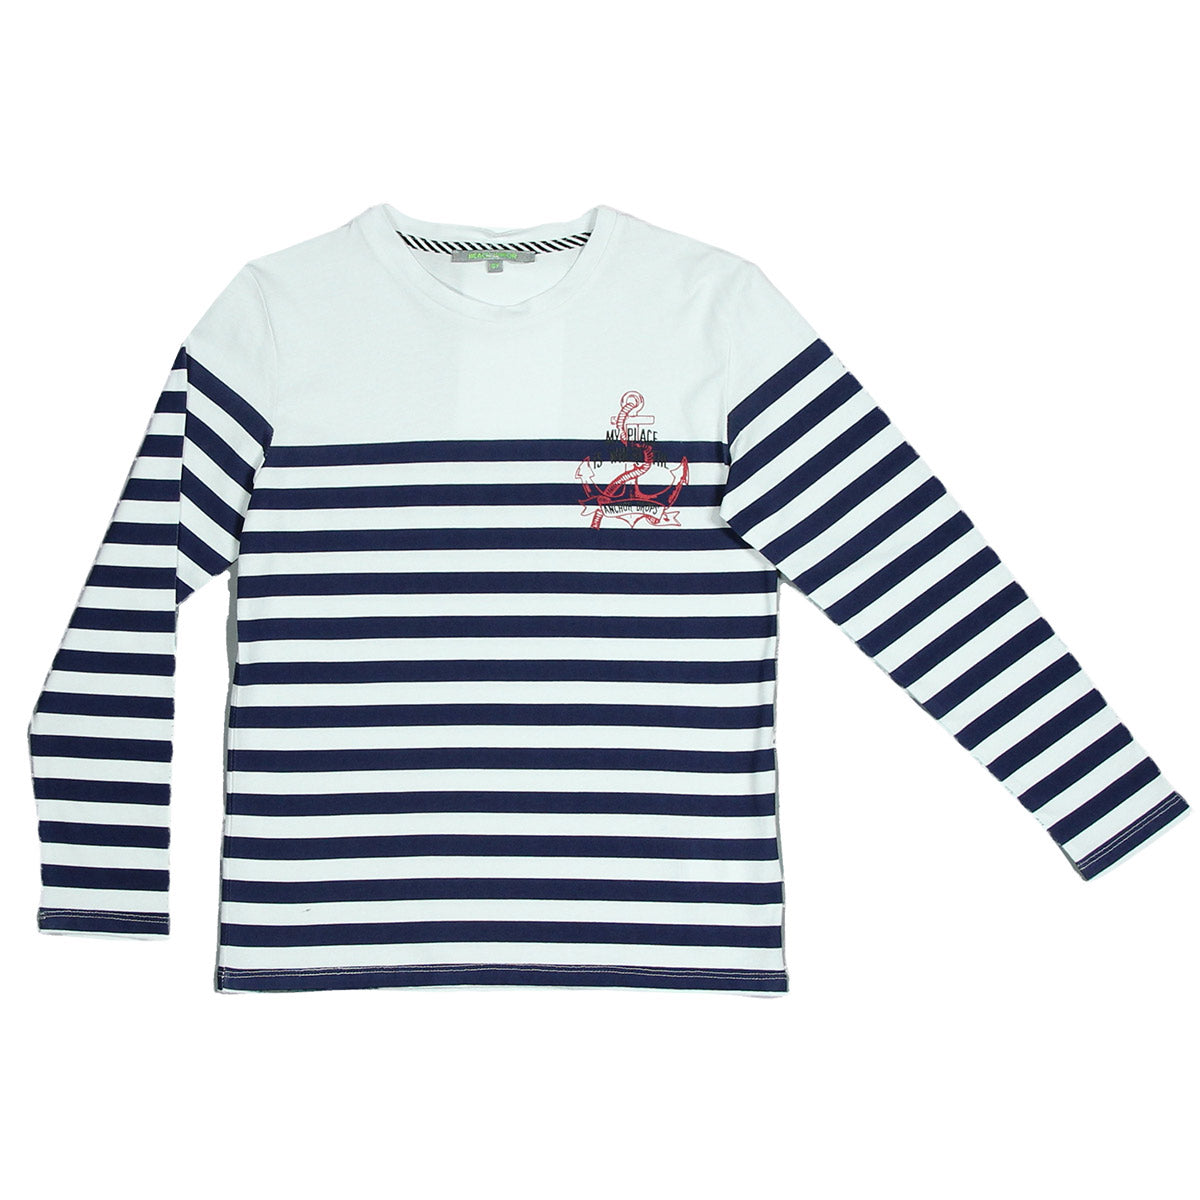 Langärmliges T-Shirt aus der Kinderkleidungslinie Silvian Heach Kids mit einem Matrosen-Design in...